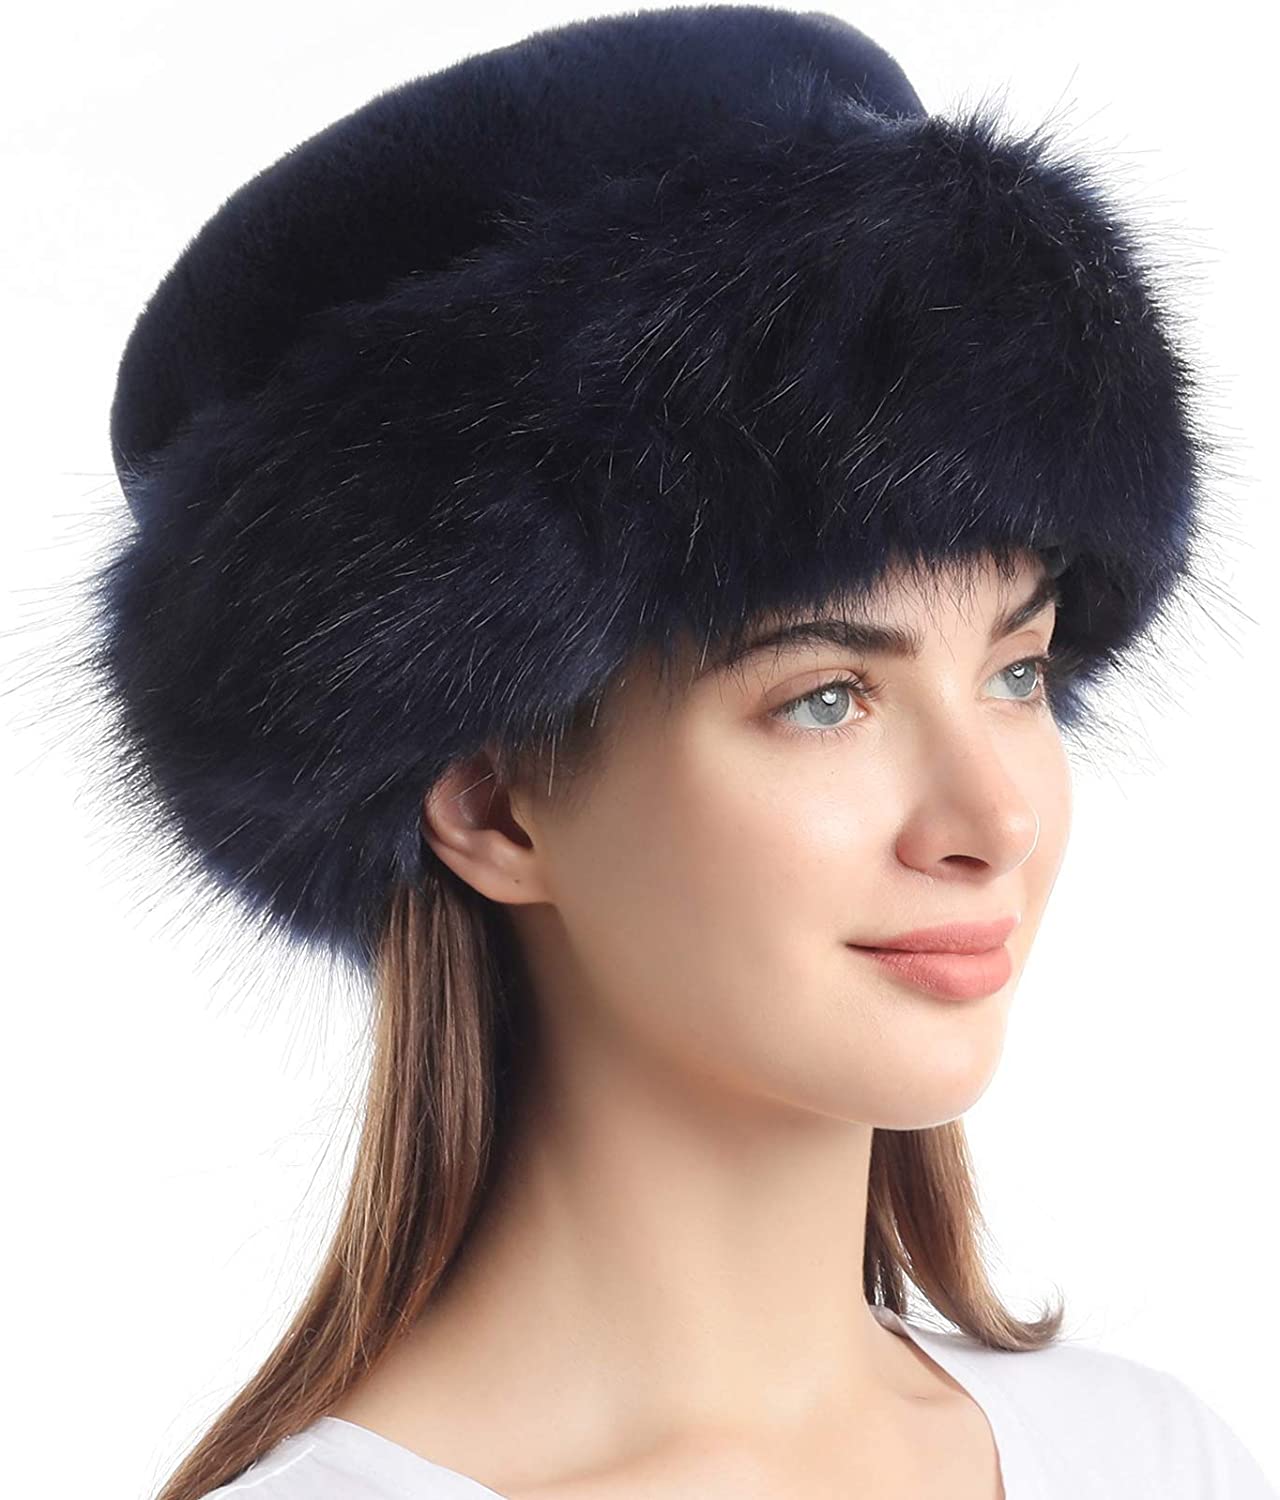 کلاه قزاق یا کلاه سبک روسی